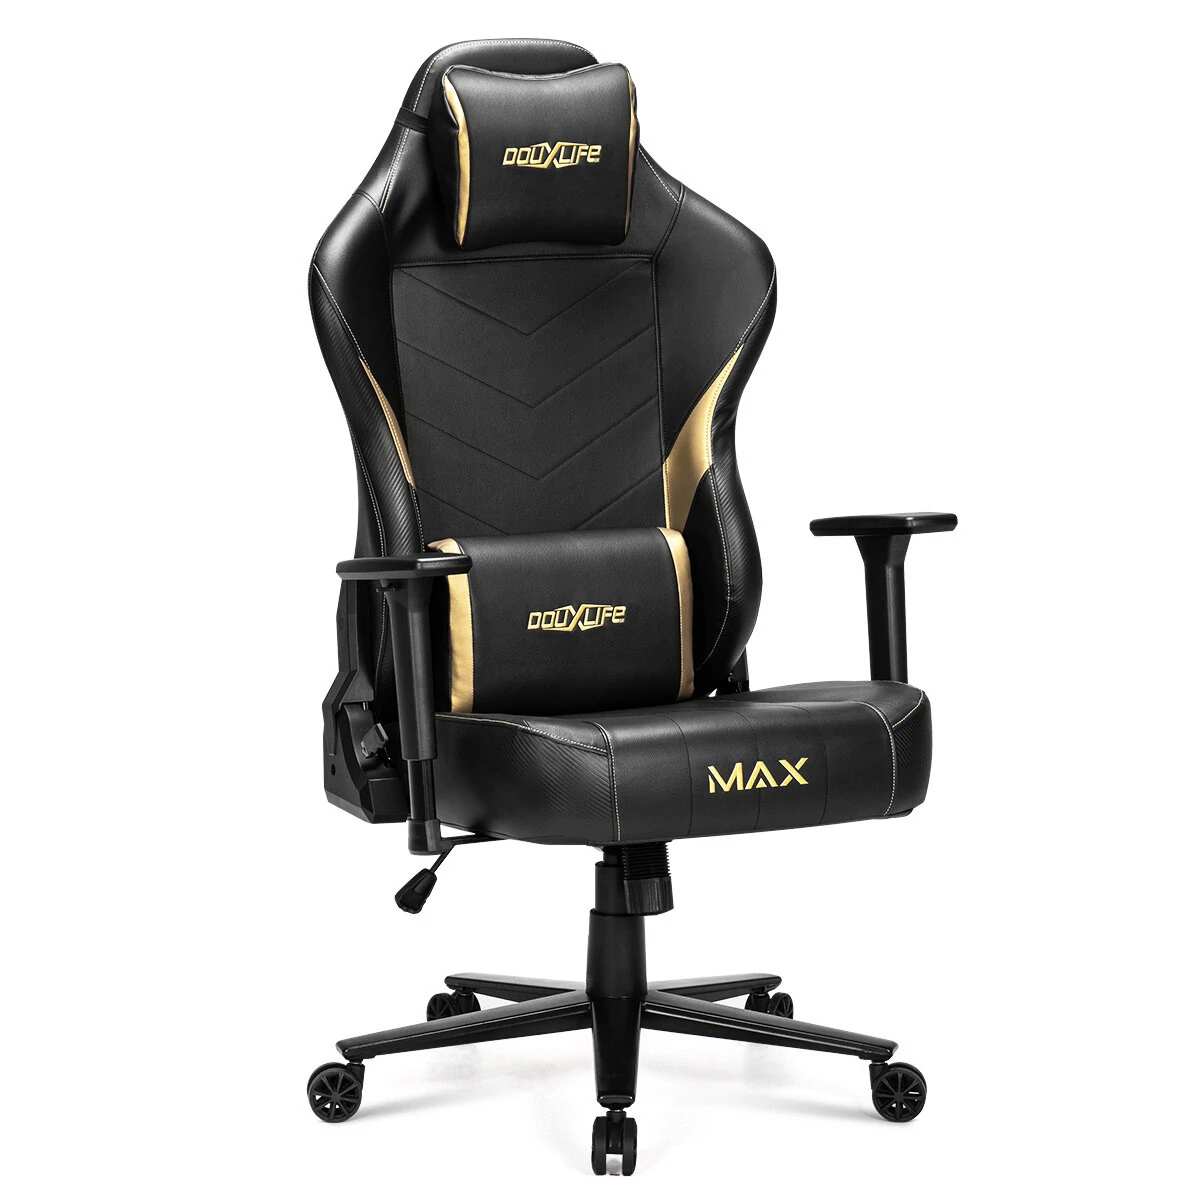 Douxlife Max Gaming Chair Banggood Coupon Promo Code (CZ Warehouse)